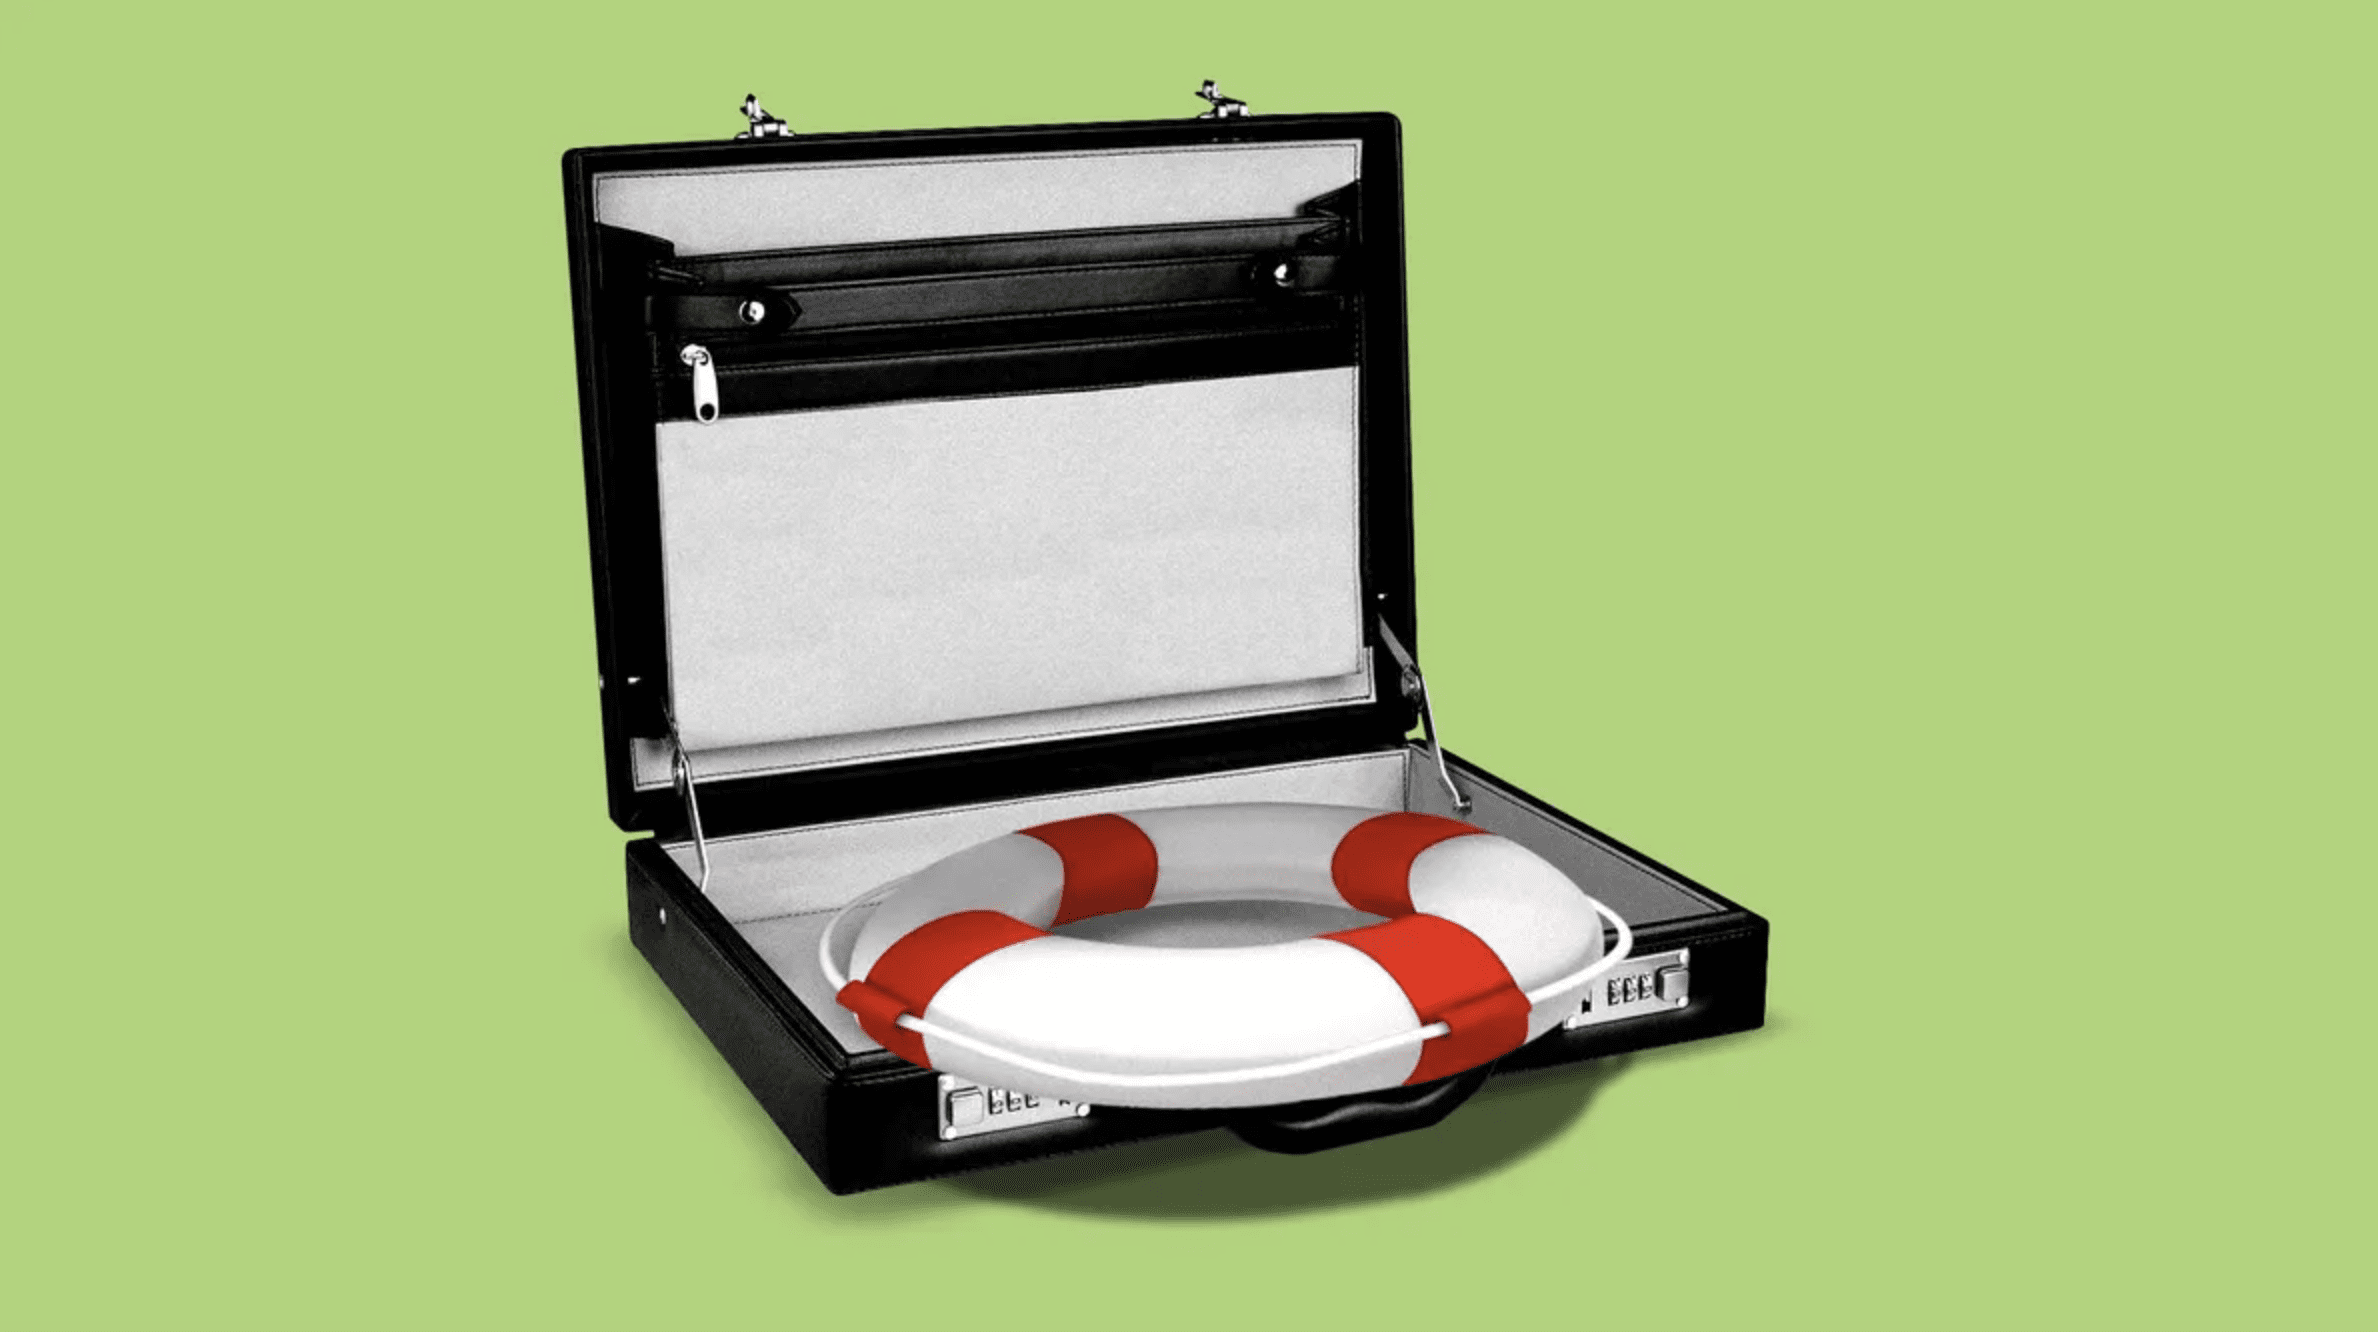 A lifebuoy in an open briefcase